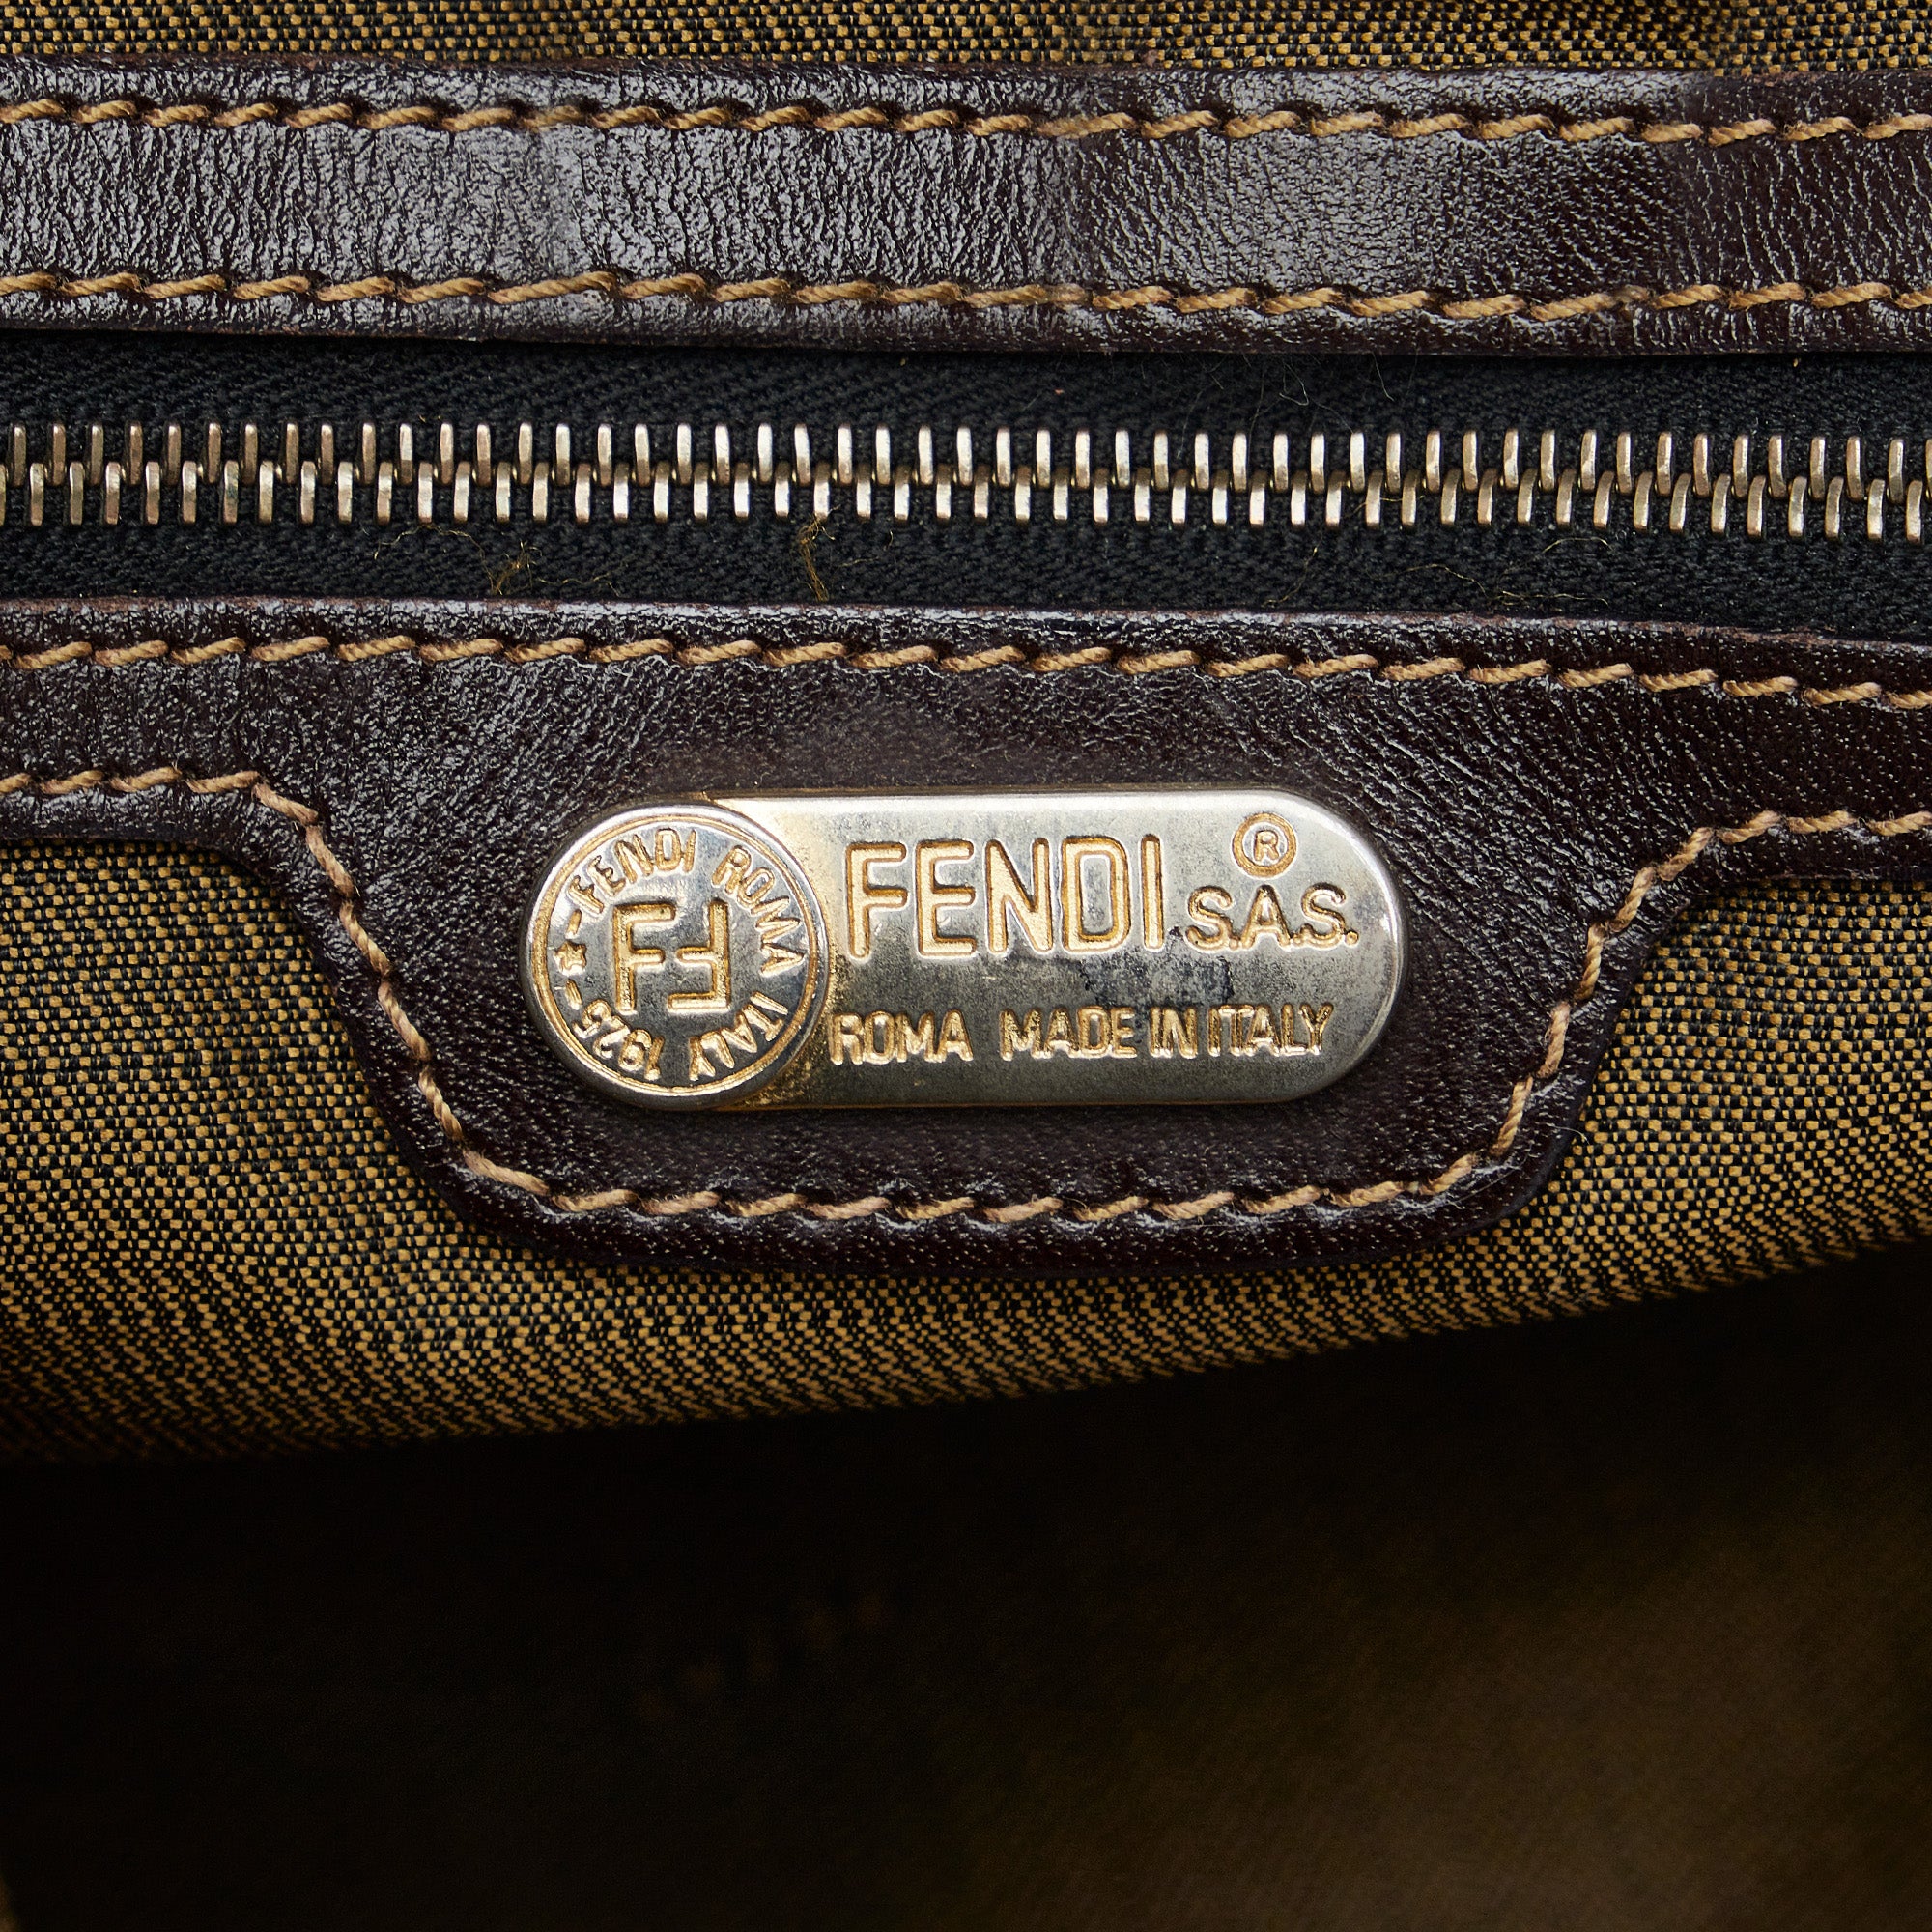 Fendi, Bags, Vintage Fendi Sas Bag 925 Roma Made In Italy